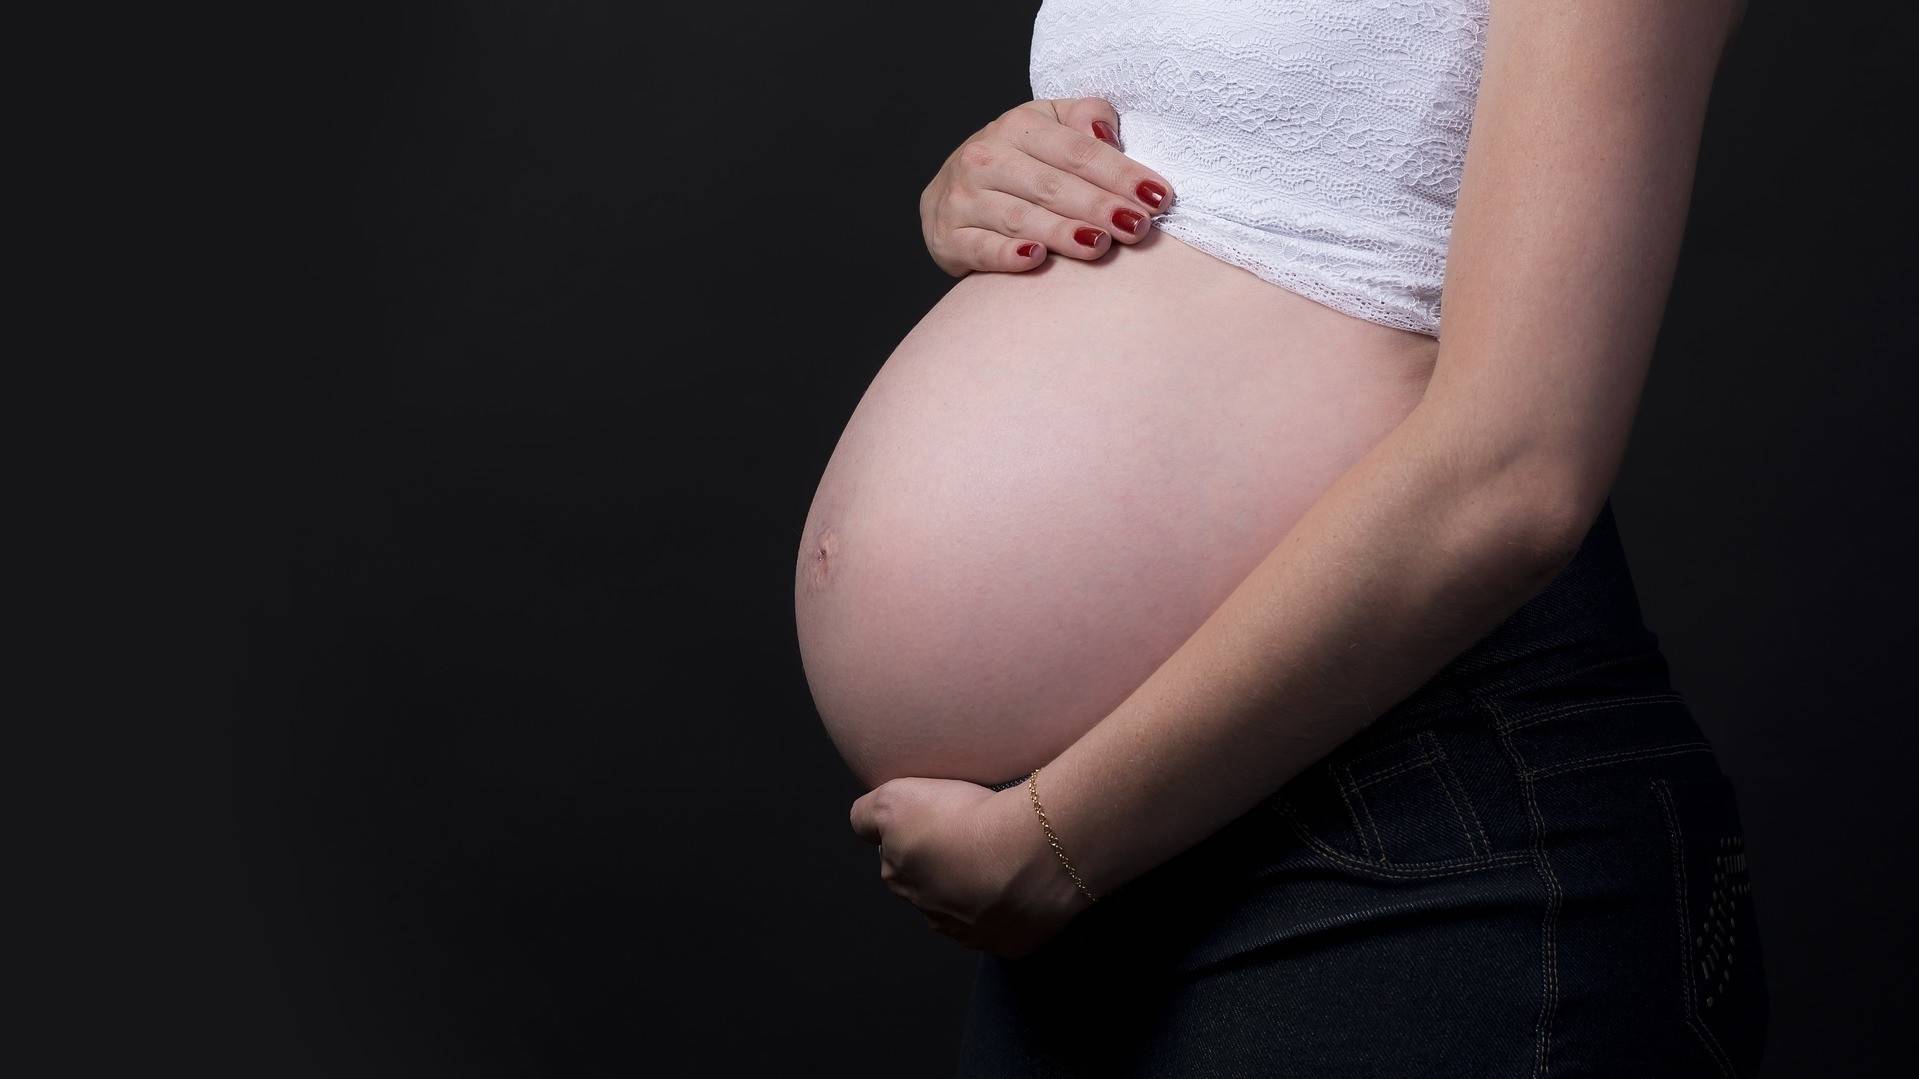 Гинеколог Лордкипанидзе призвал не сравнивать суррогатное материнство с торговлей детьми